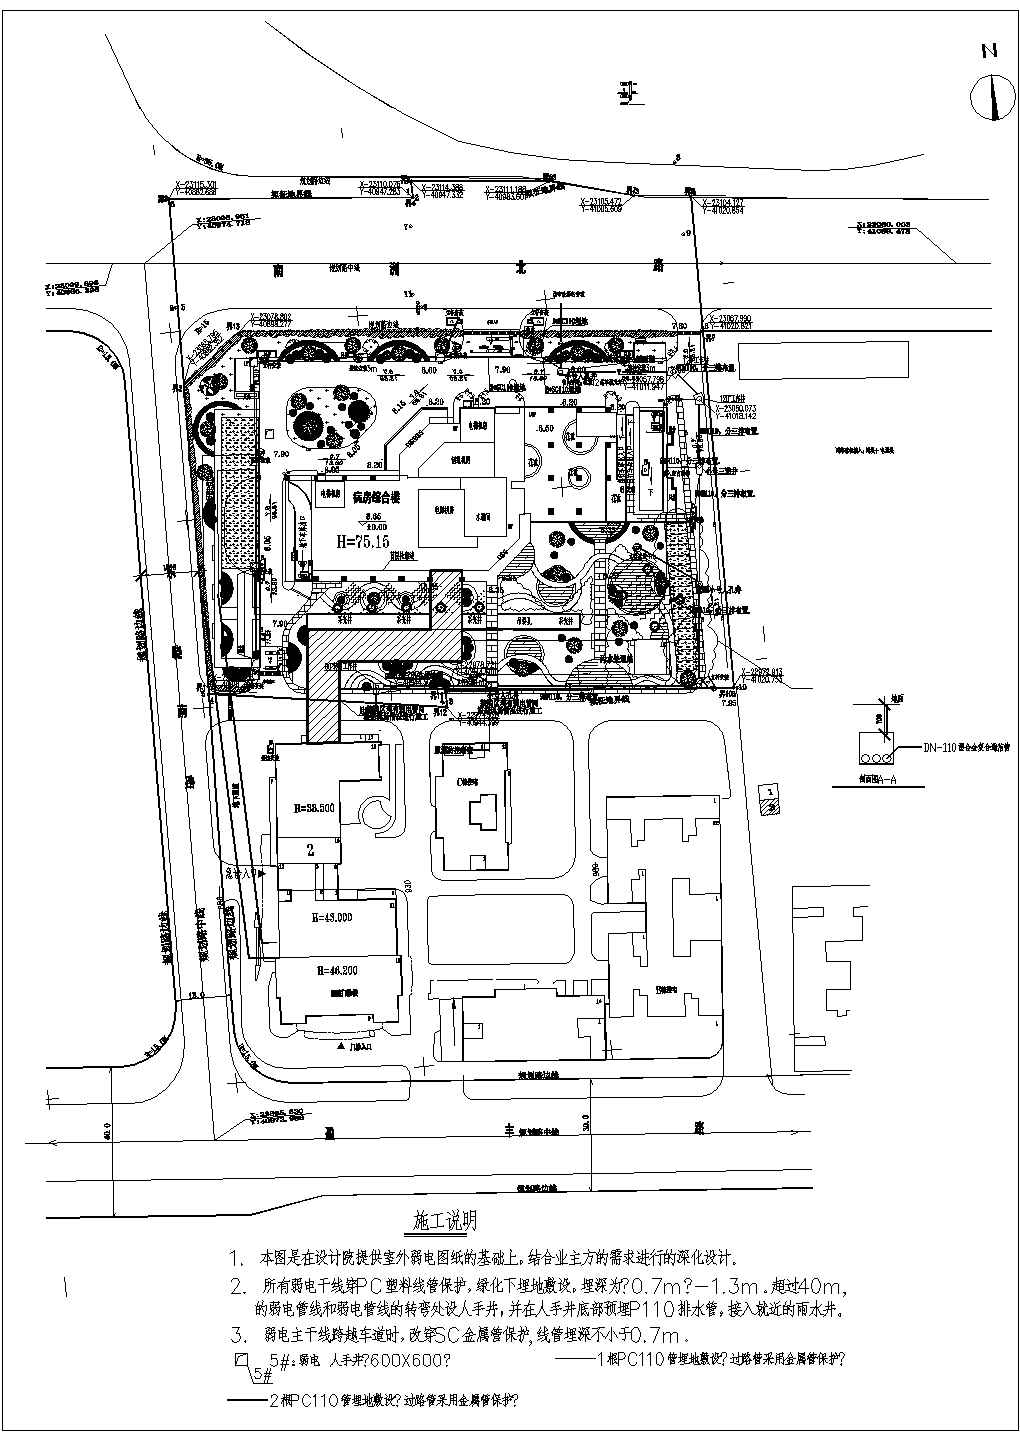 某医院停车场管理系统电气设计图纸